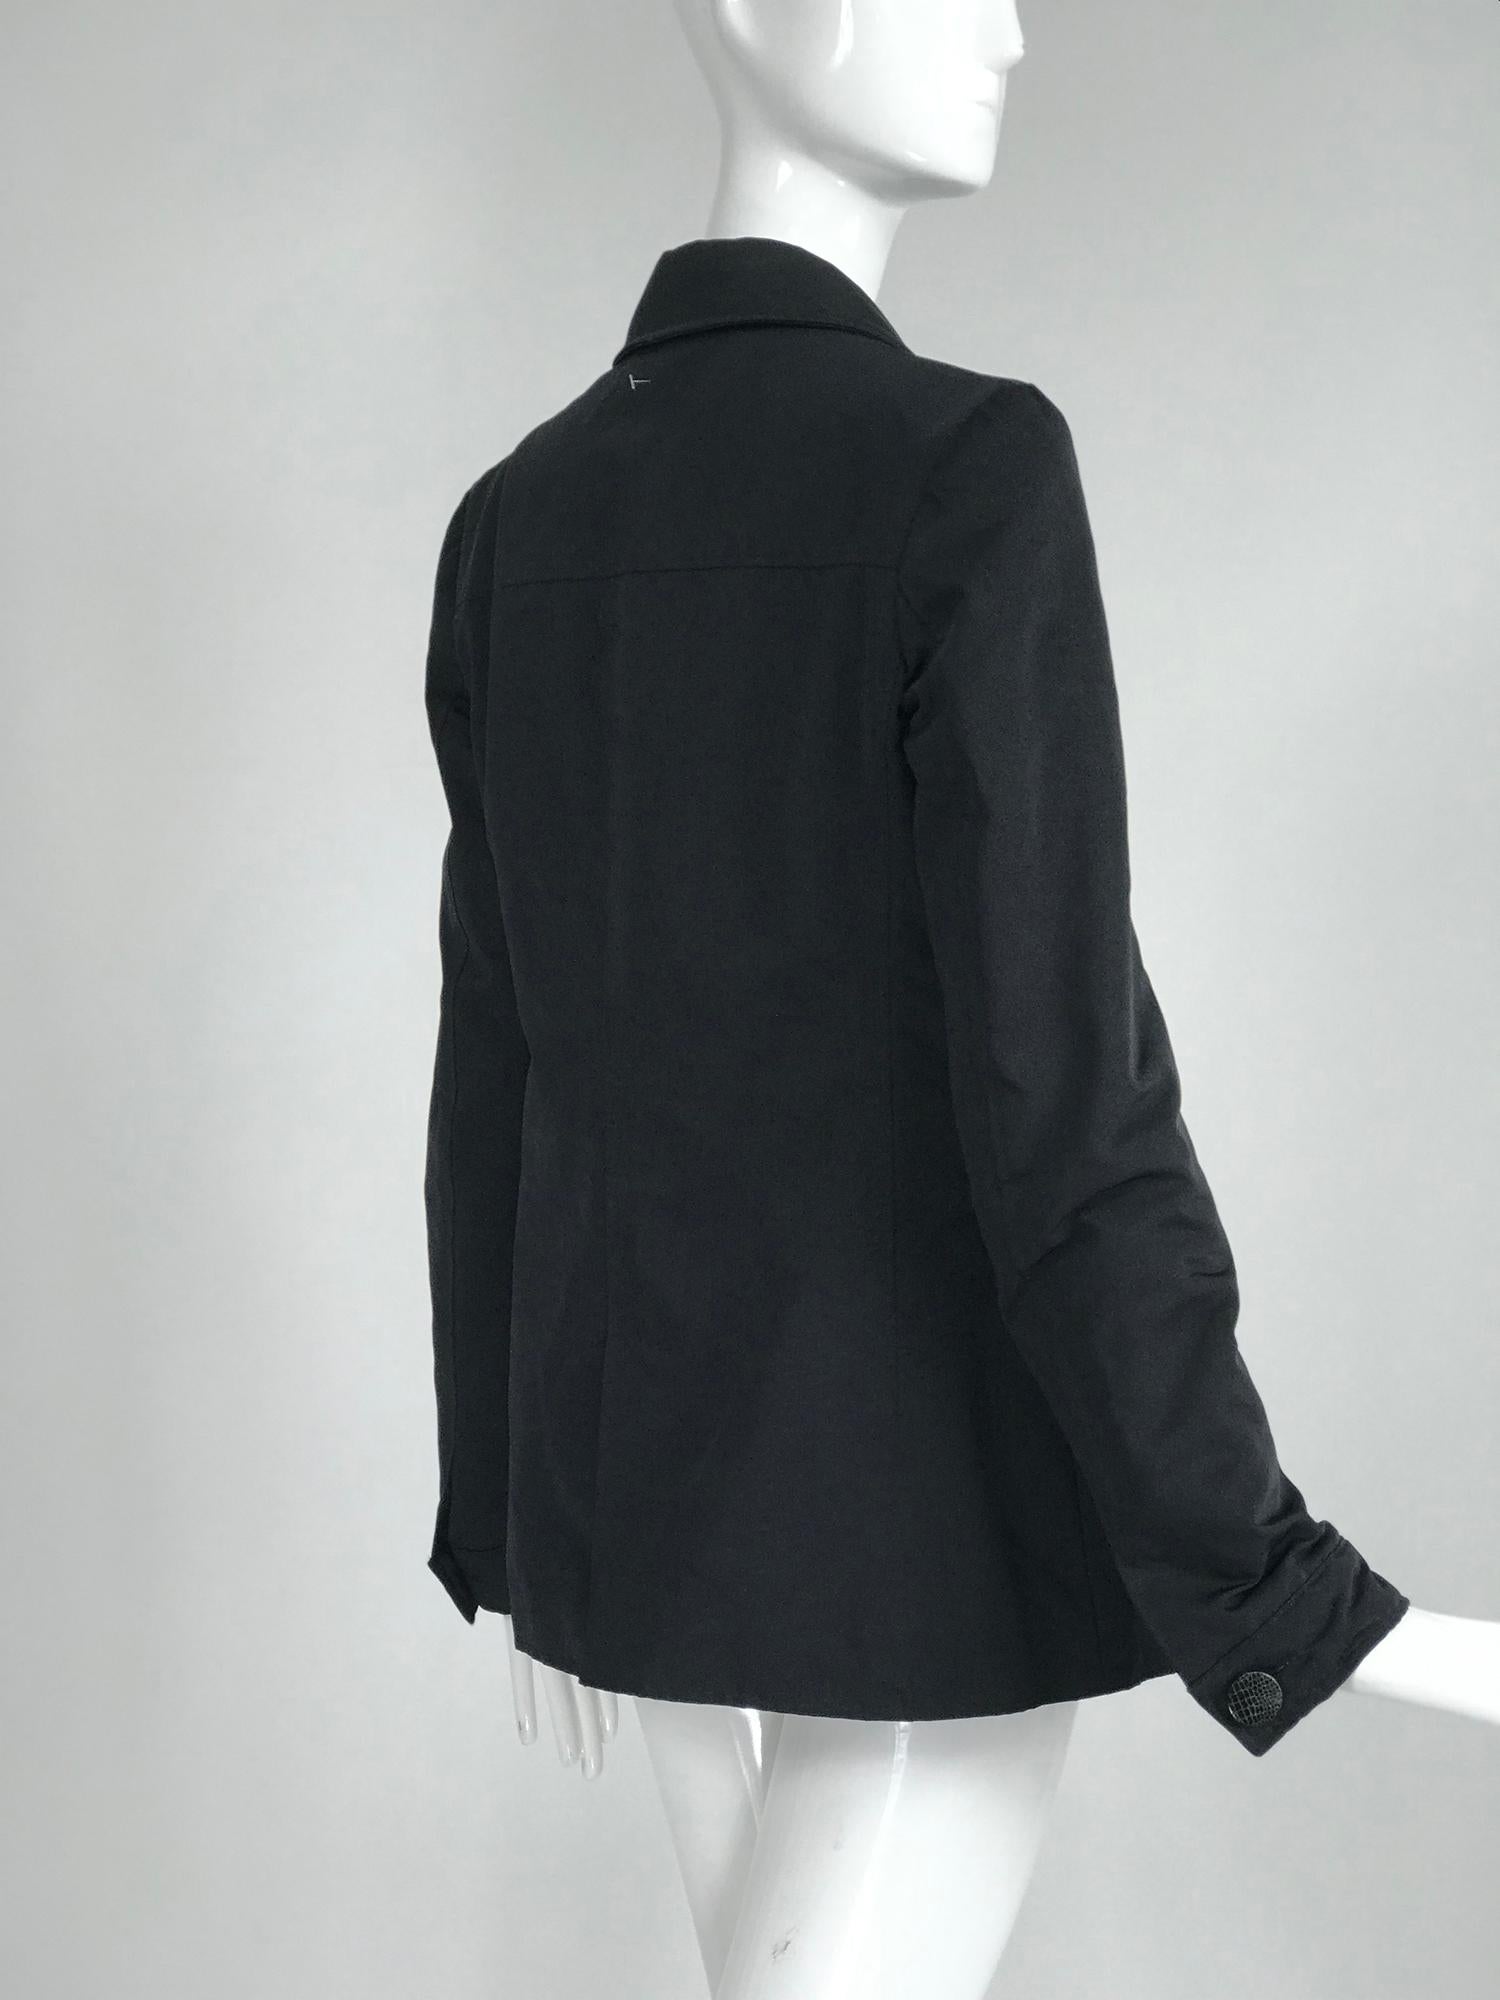 Giorgio Armani Collezioni Black Nylon Single Breasted Riding Jacket In Good Condition In West Palm Beach, FL